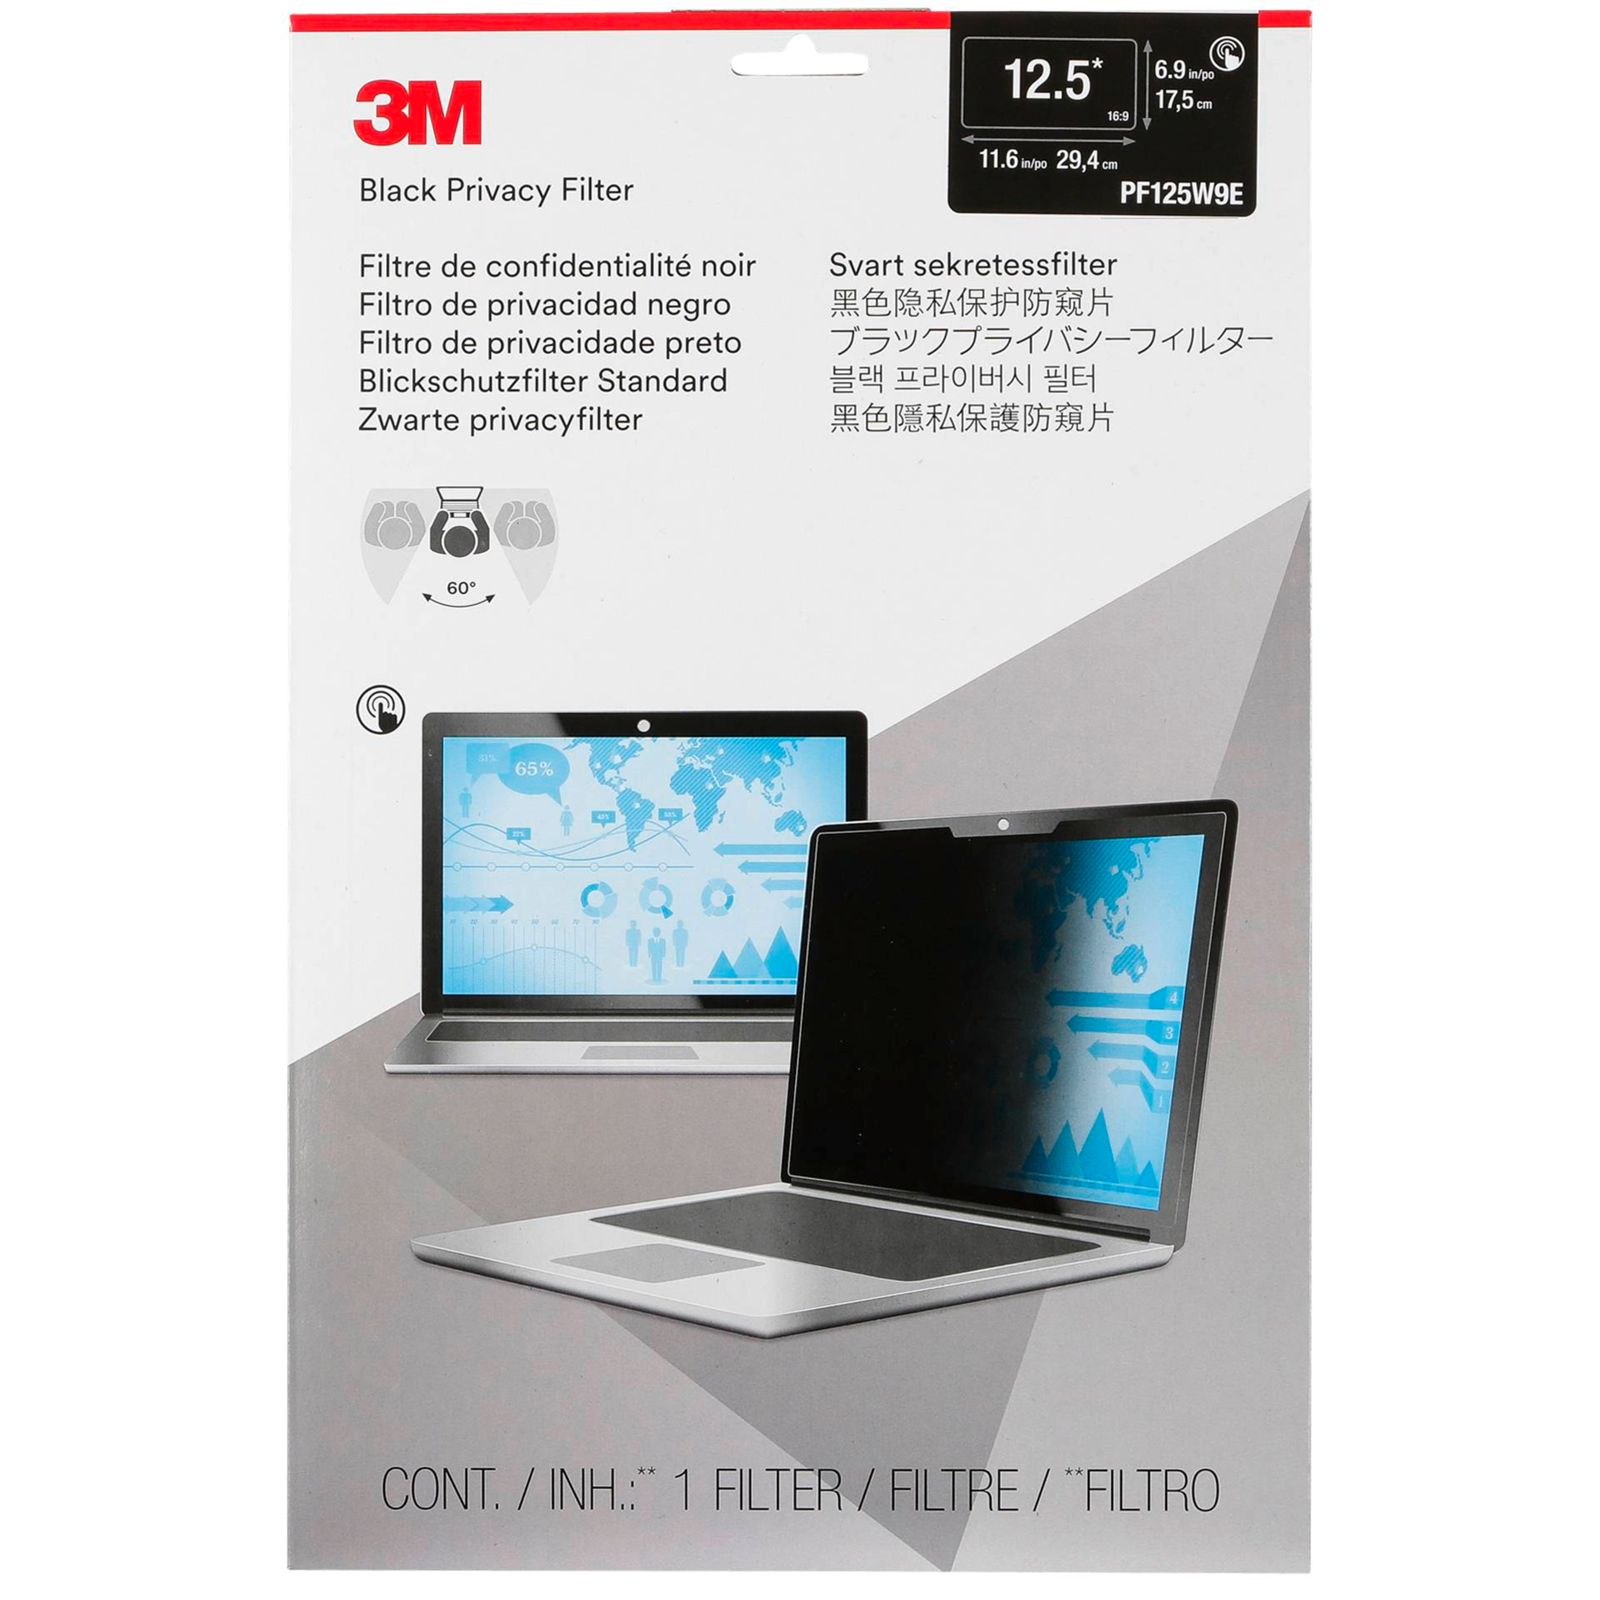 3M PF125W9E filtro privacy Standard per Laptop 12,5  16:9